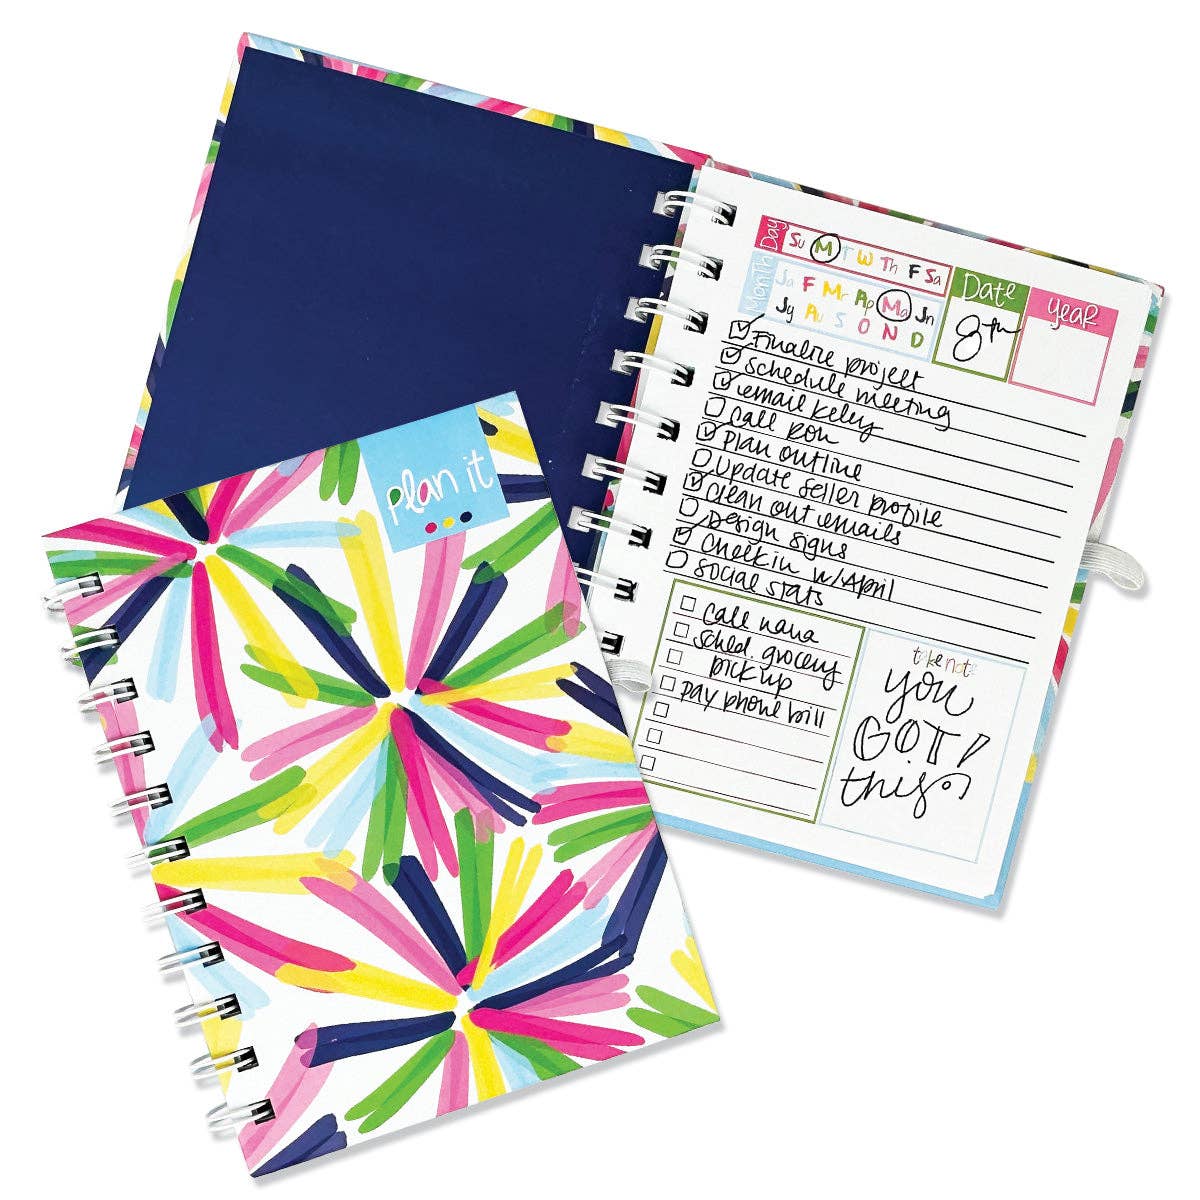 Plan It! Pocket Notebooks | Poppin' Pinwheels